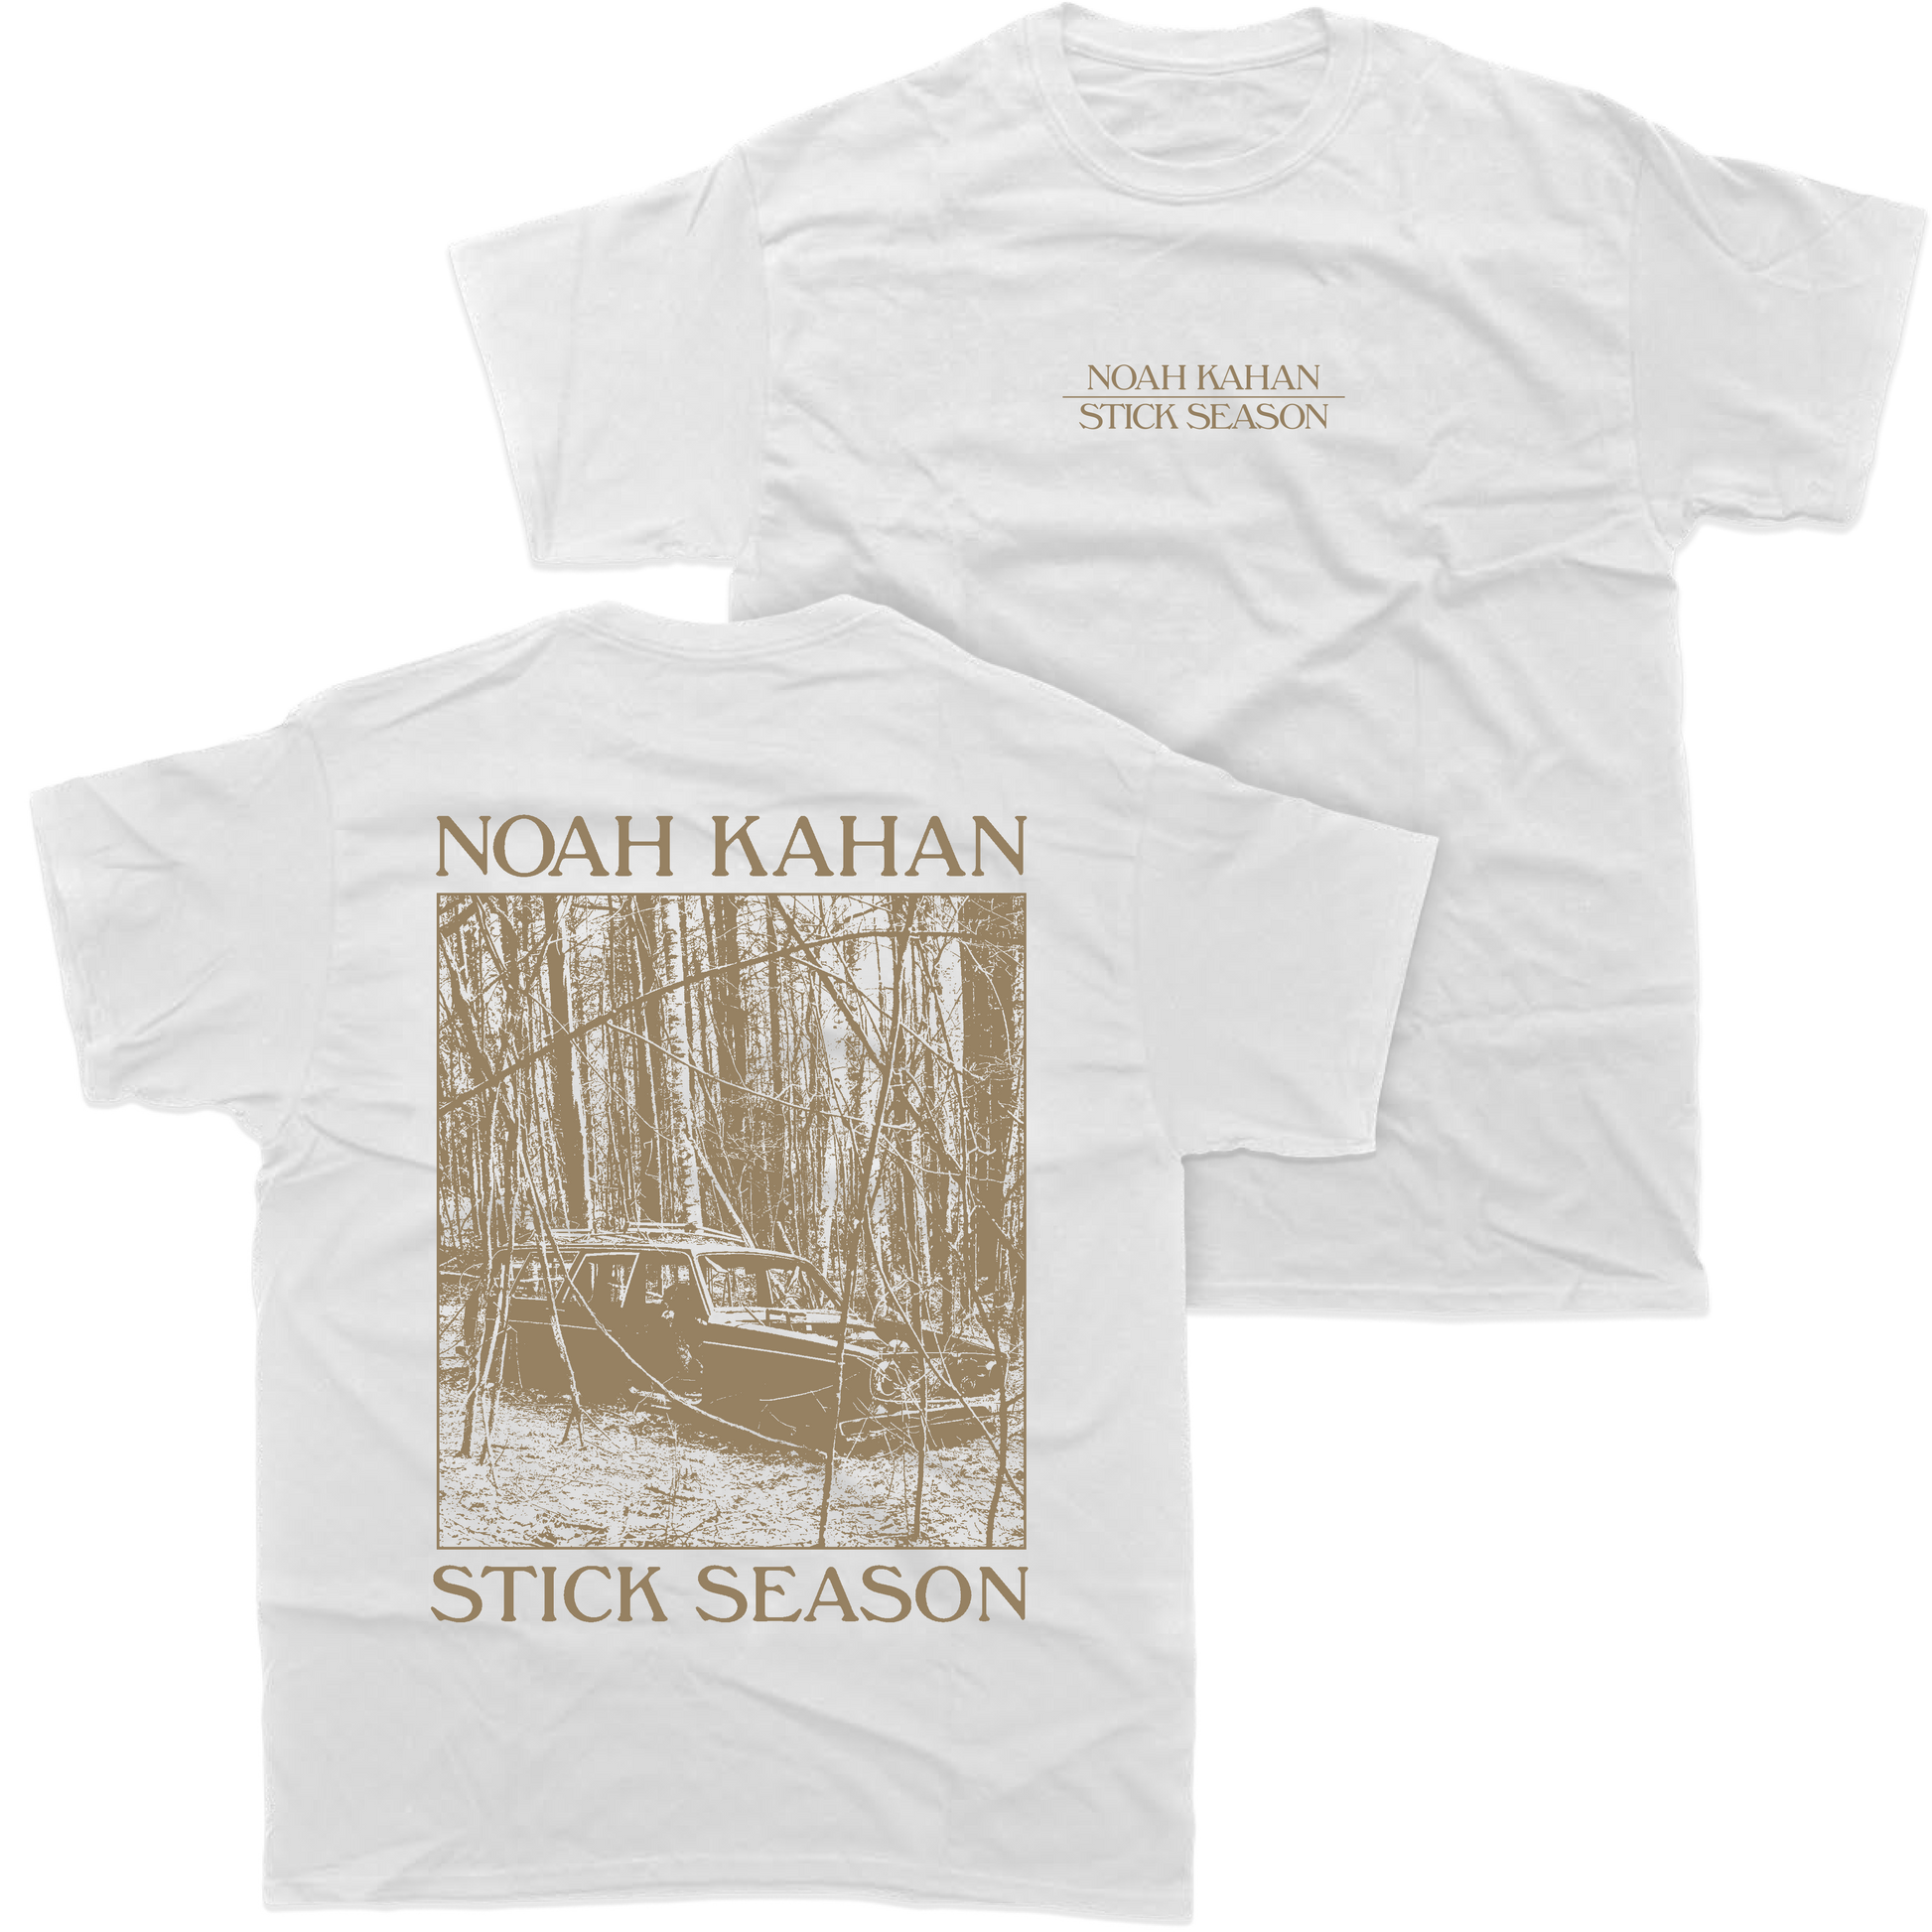 Noah Kahan Stick Season white short sleeve t-shirt